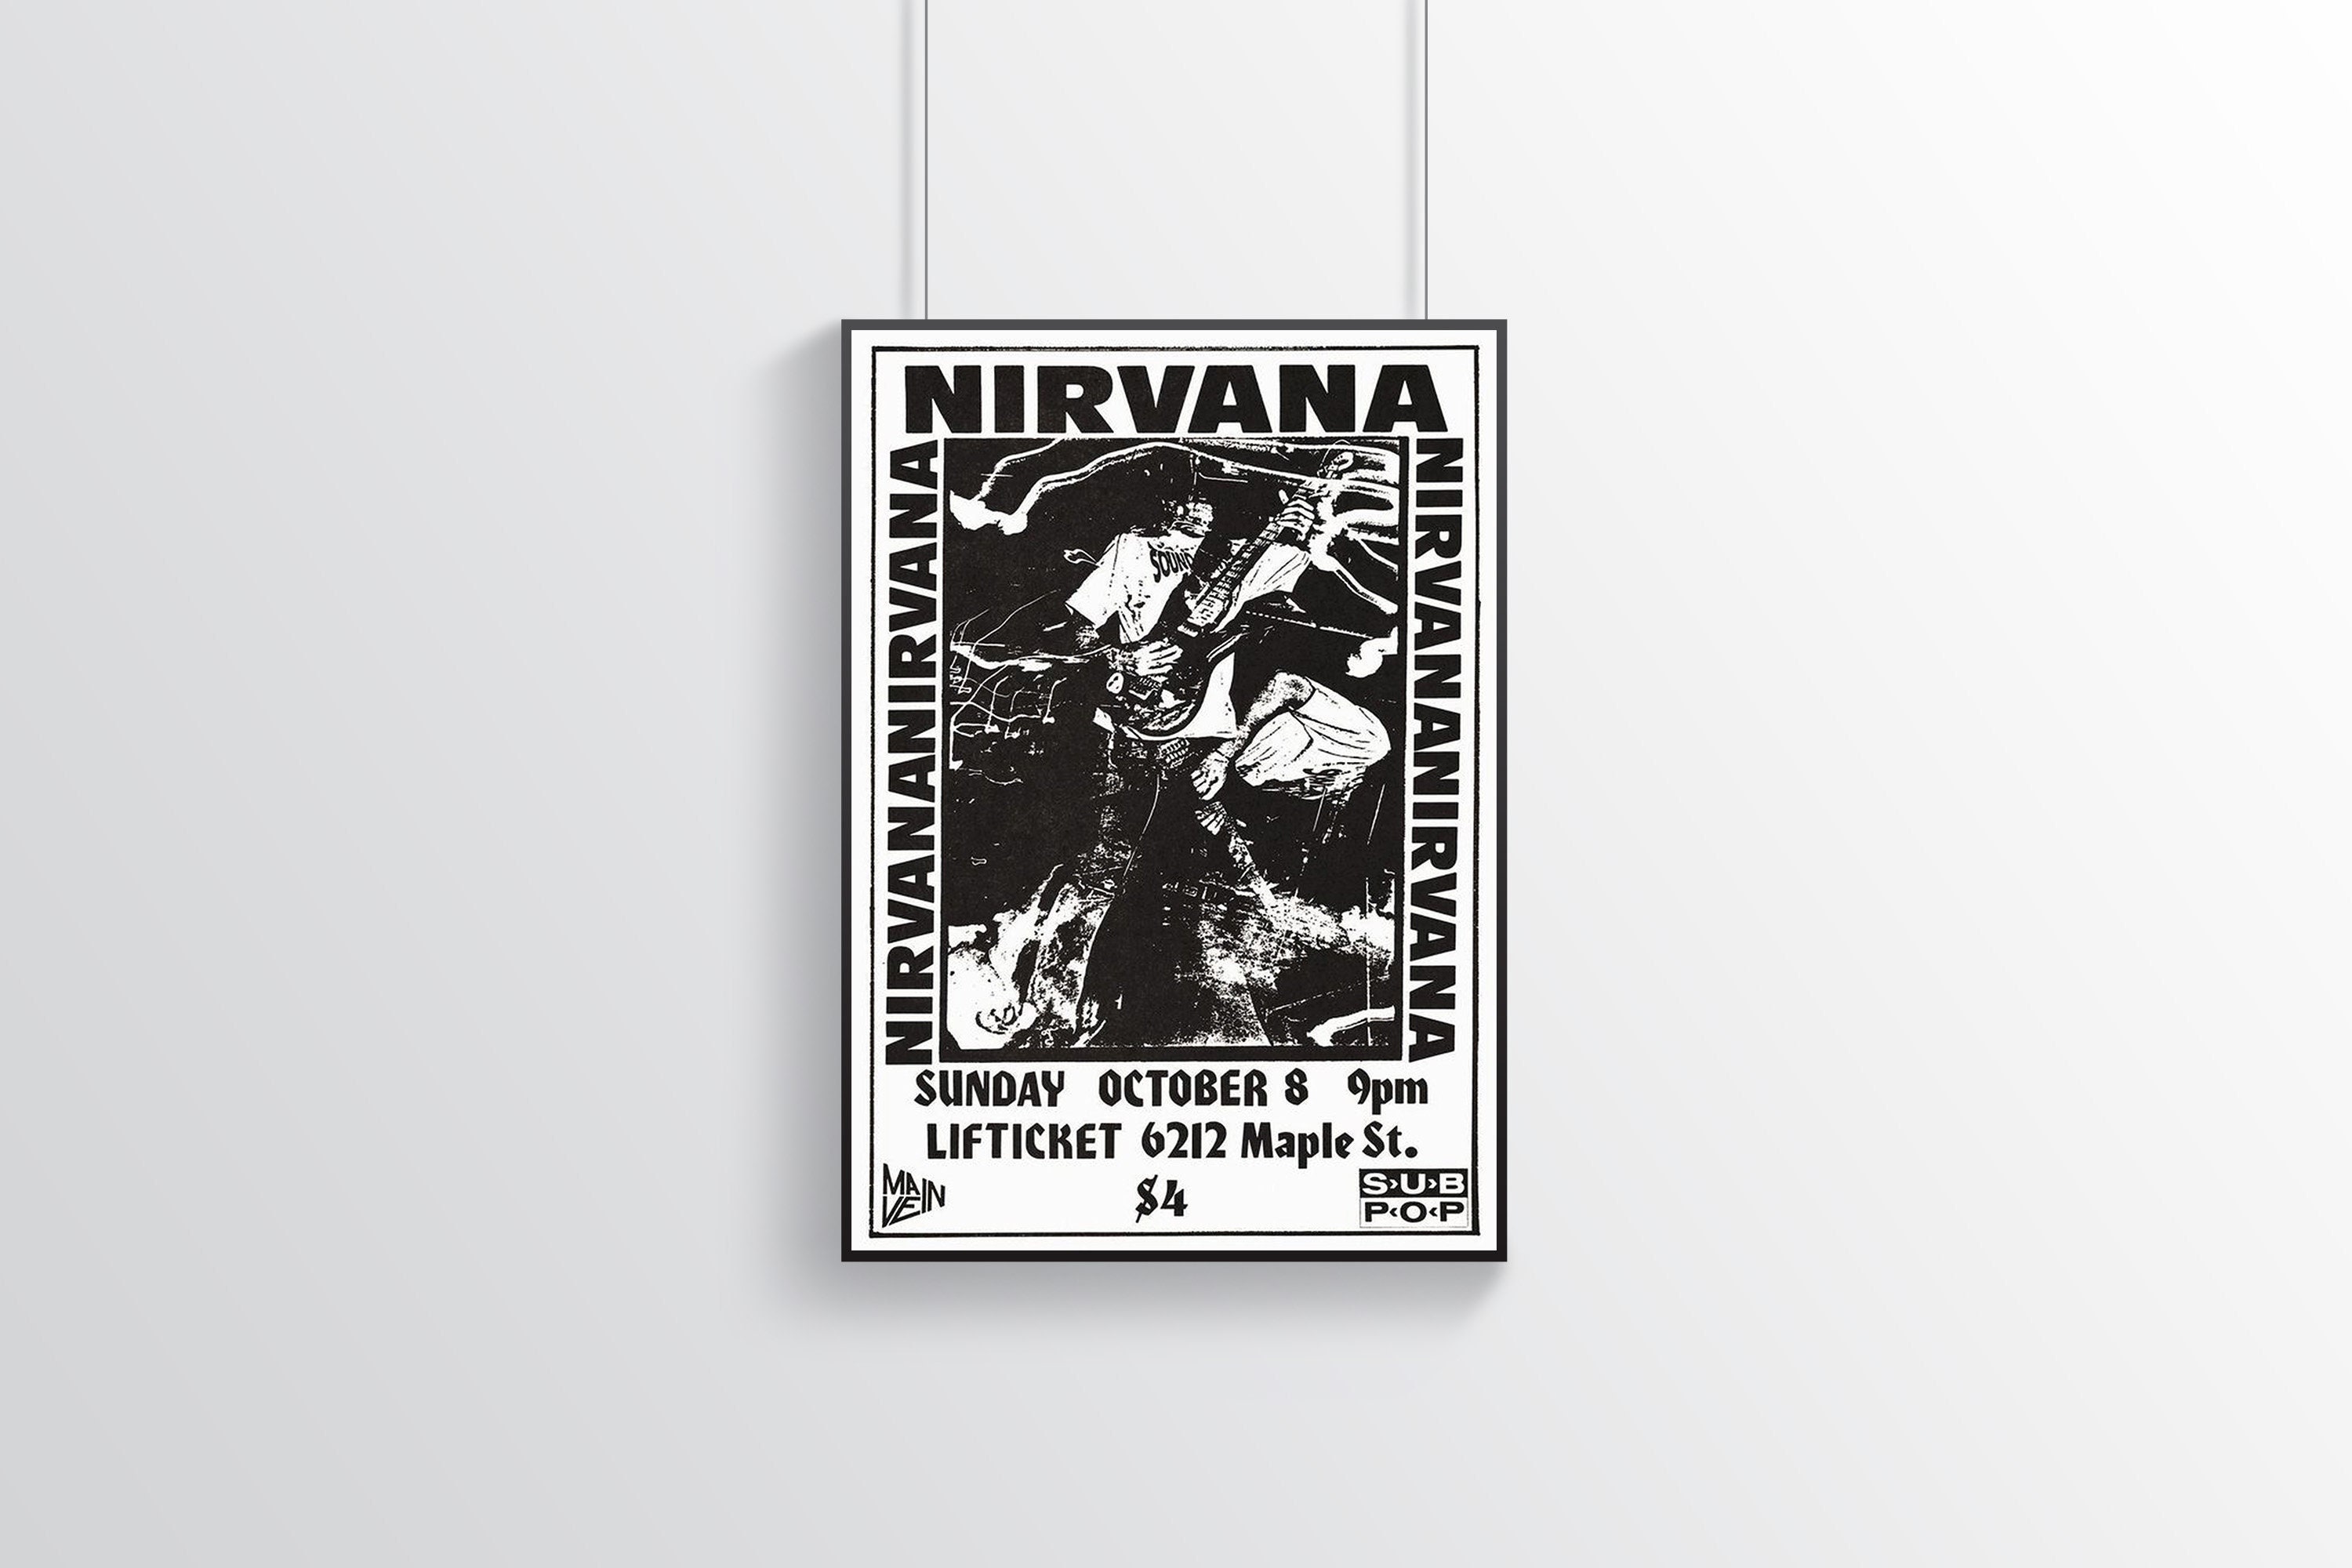 - Nirvana Store